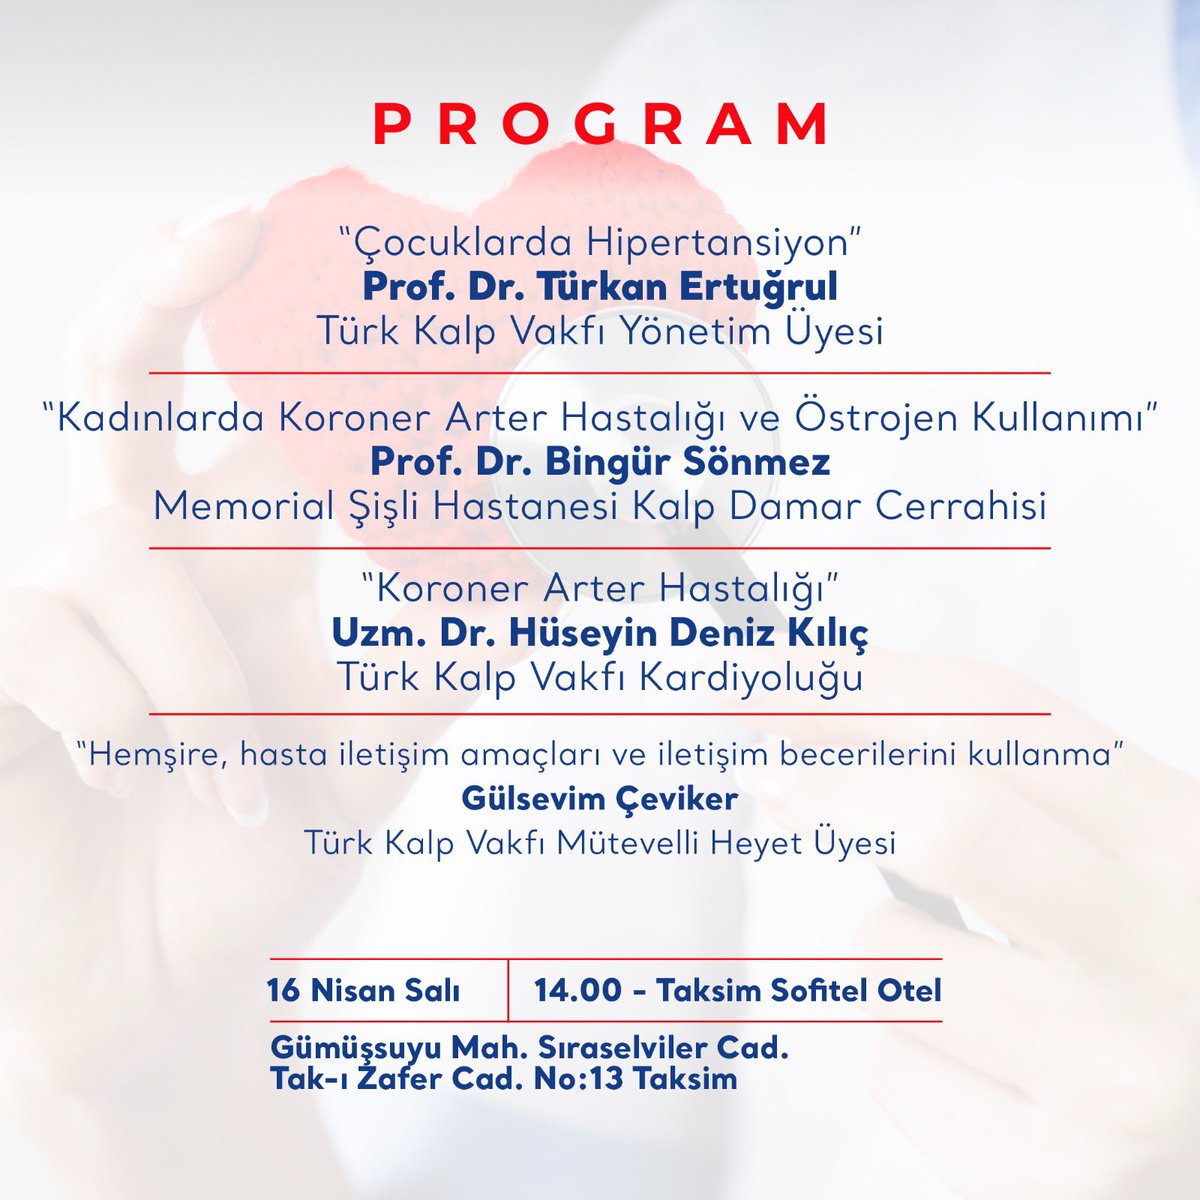 Türk Kalp Vakfı iş birliği ile kalp-damar hastalıklarını konuşacağımız 'Kalp Sağlığı' konferansına tüm komşularımız davetlidir. 📆16 Nisan Salı ⏰14.00 📍Taksim Sofitel Otel